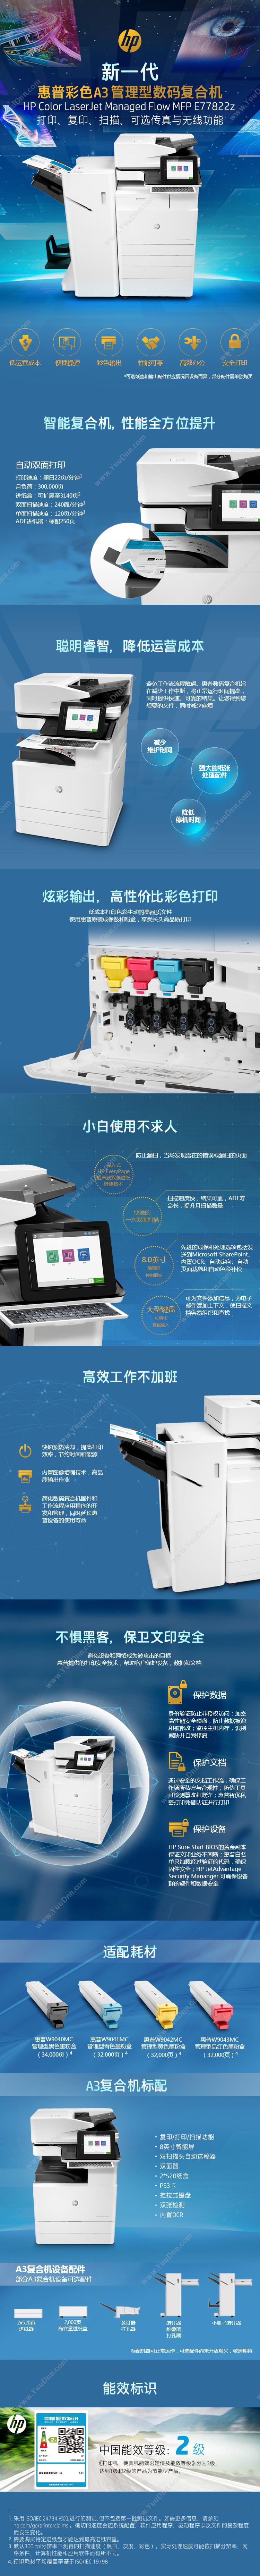 惠普 HP A3X3A77AE77822z 激光复合打印机